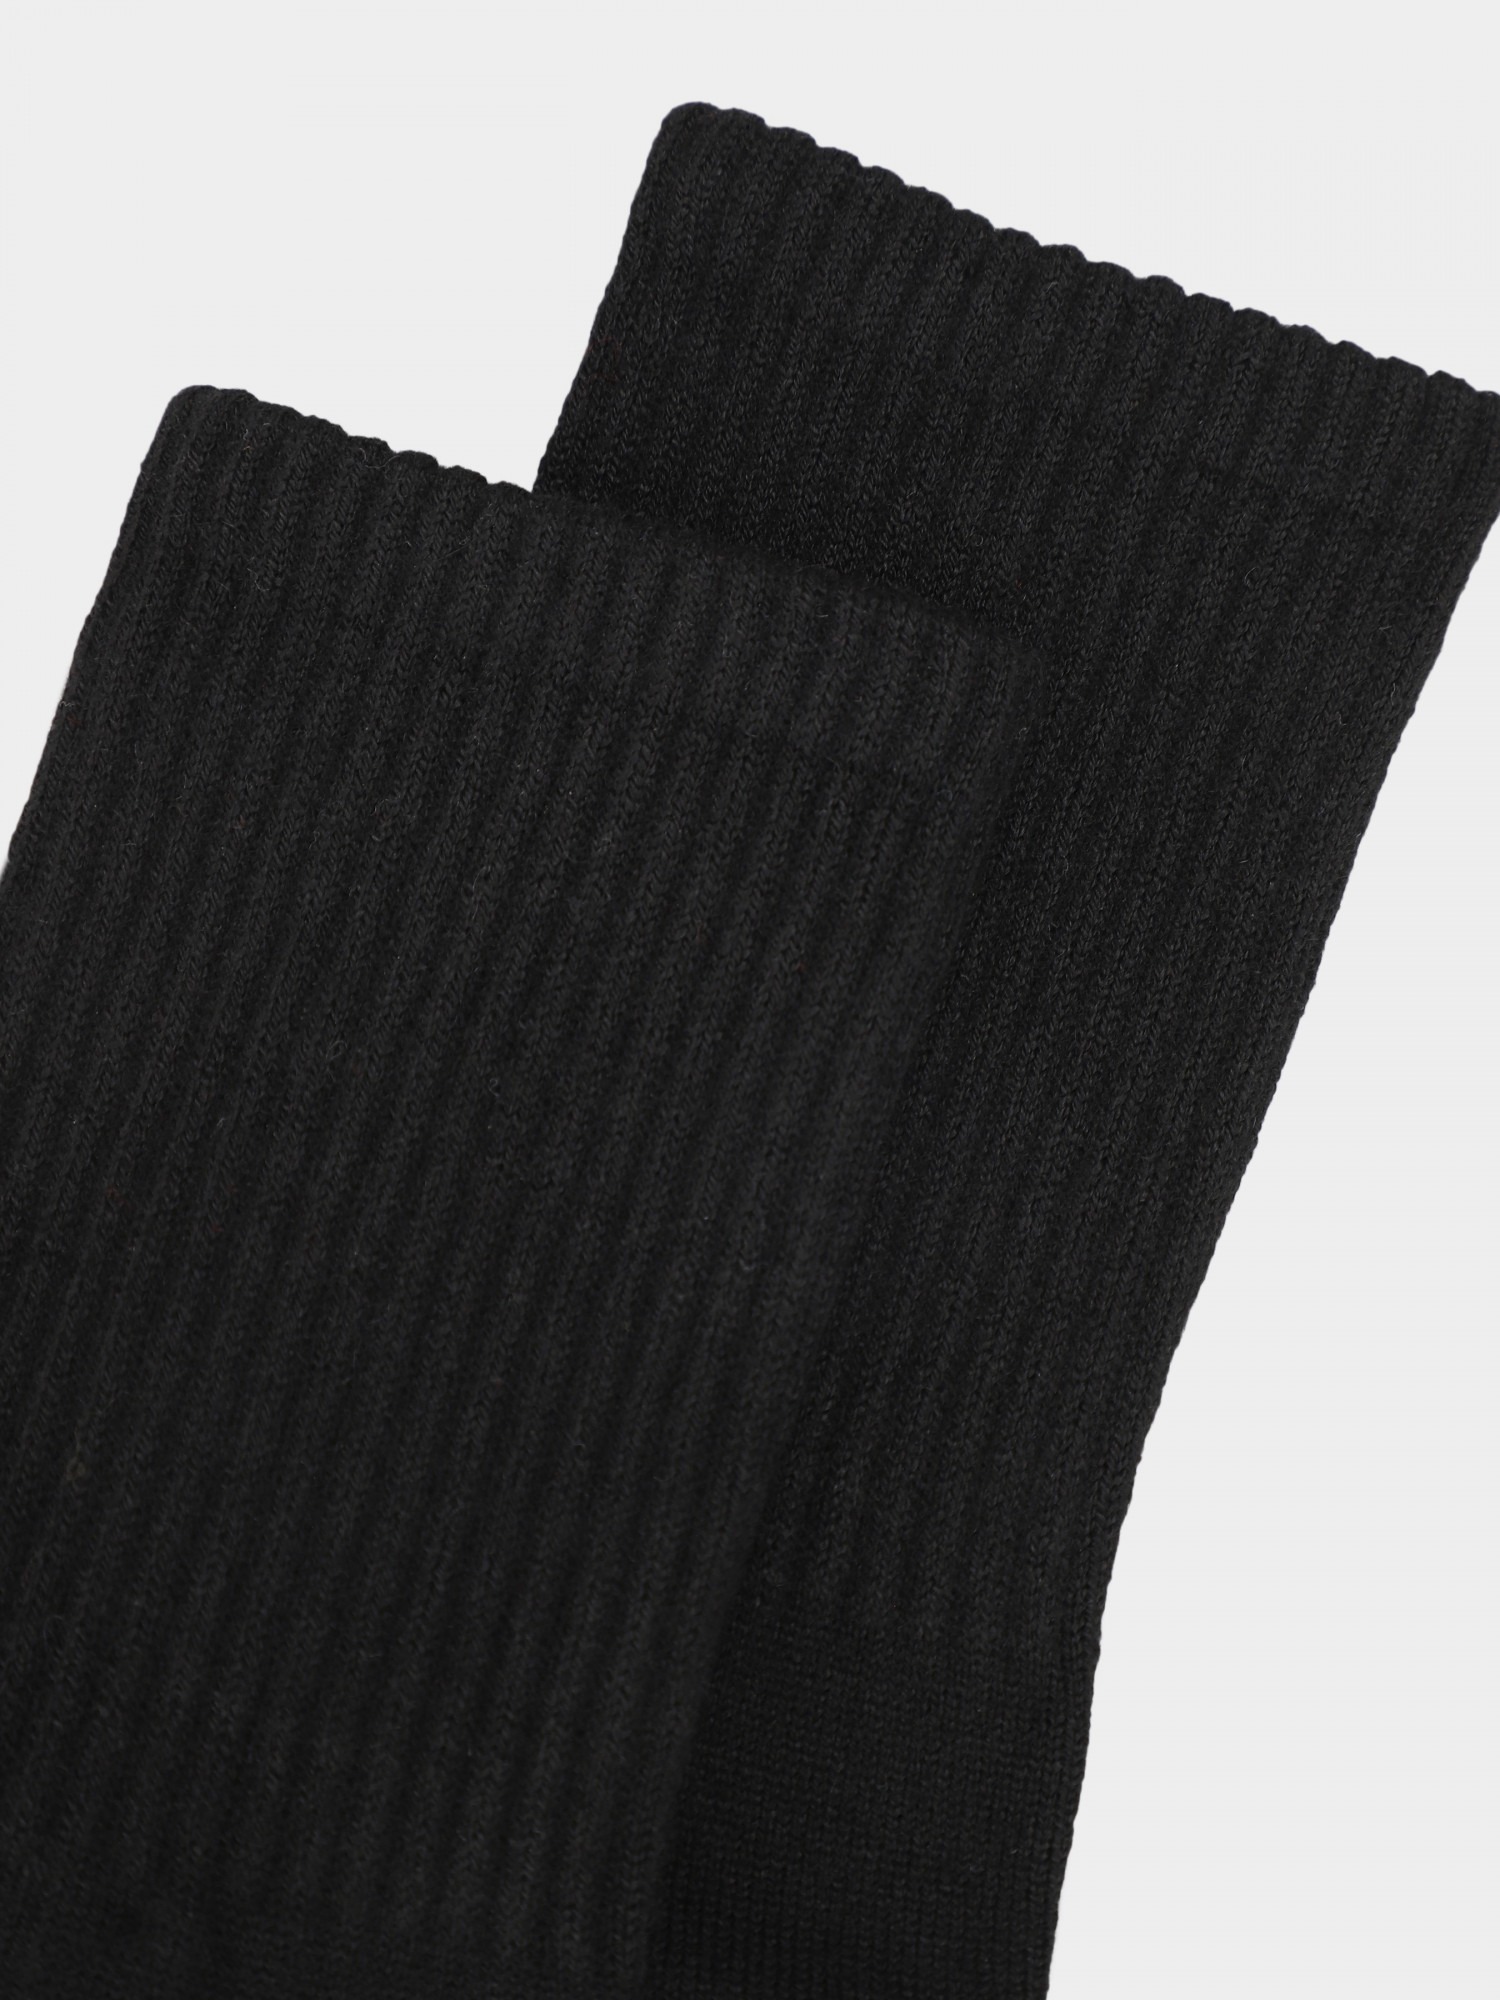 Носки Radder Wool Mix черные 252404-010 изображение 4